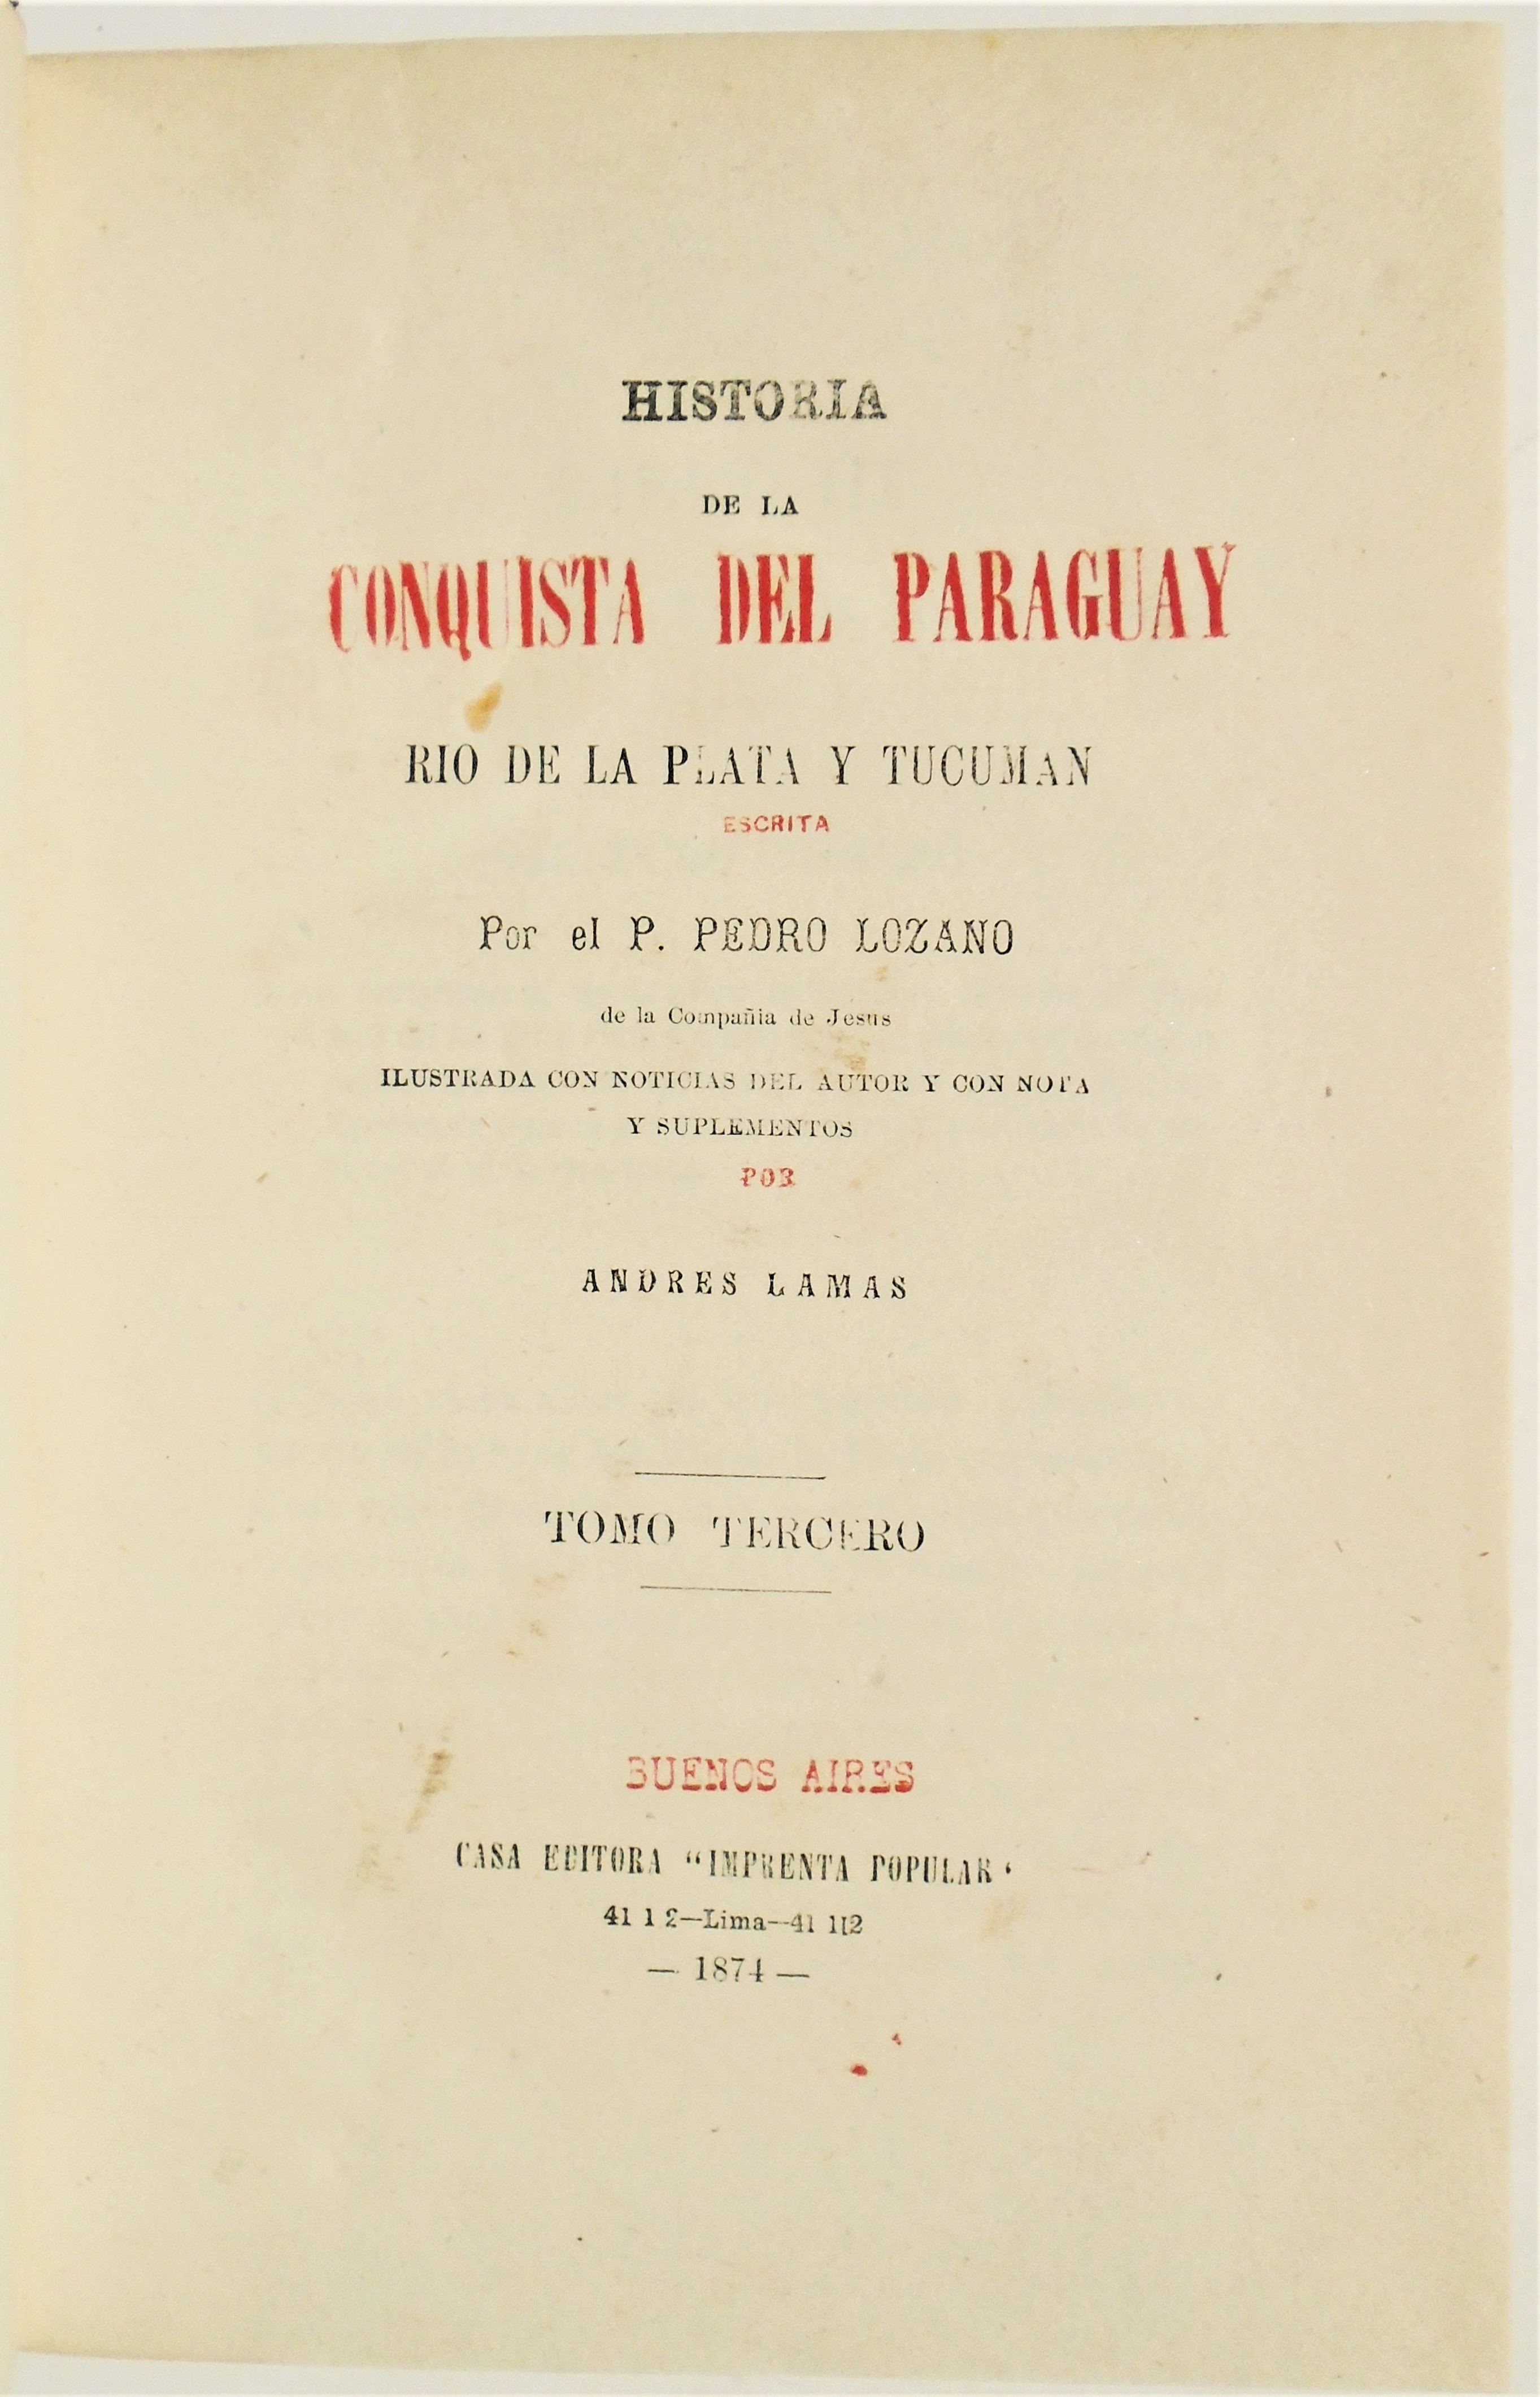 P. Pedro Lozano - Historia de la Conquista del Paraguay, Rio de la plata y Tucumán